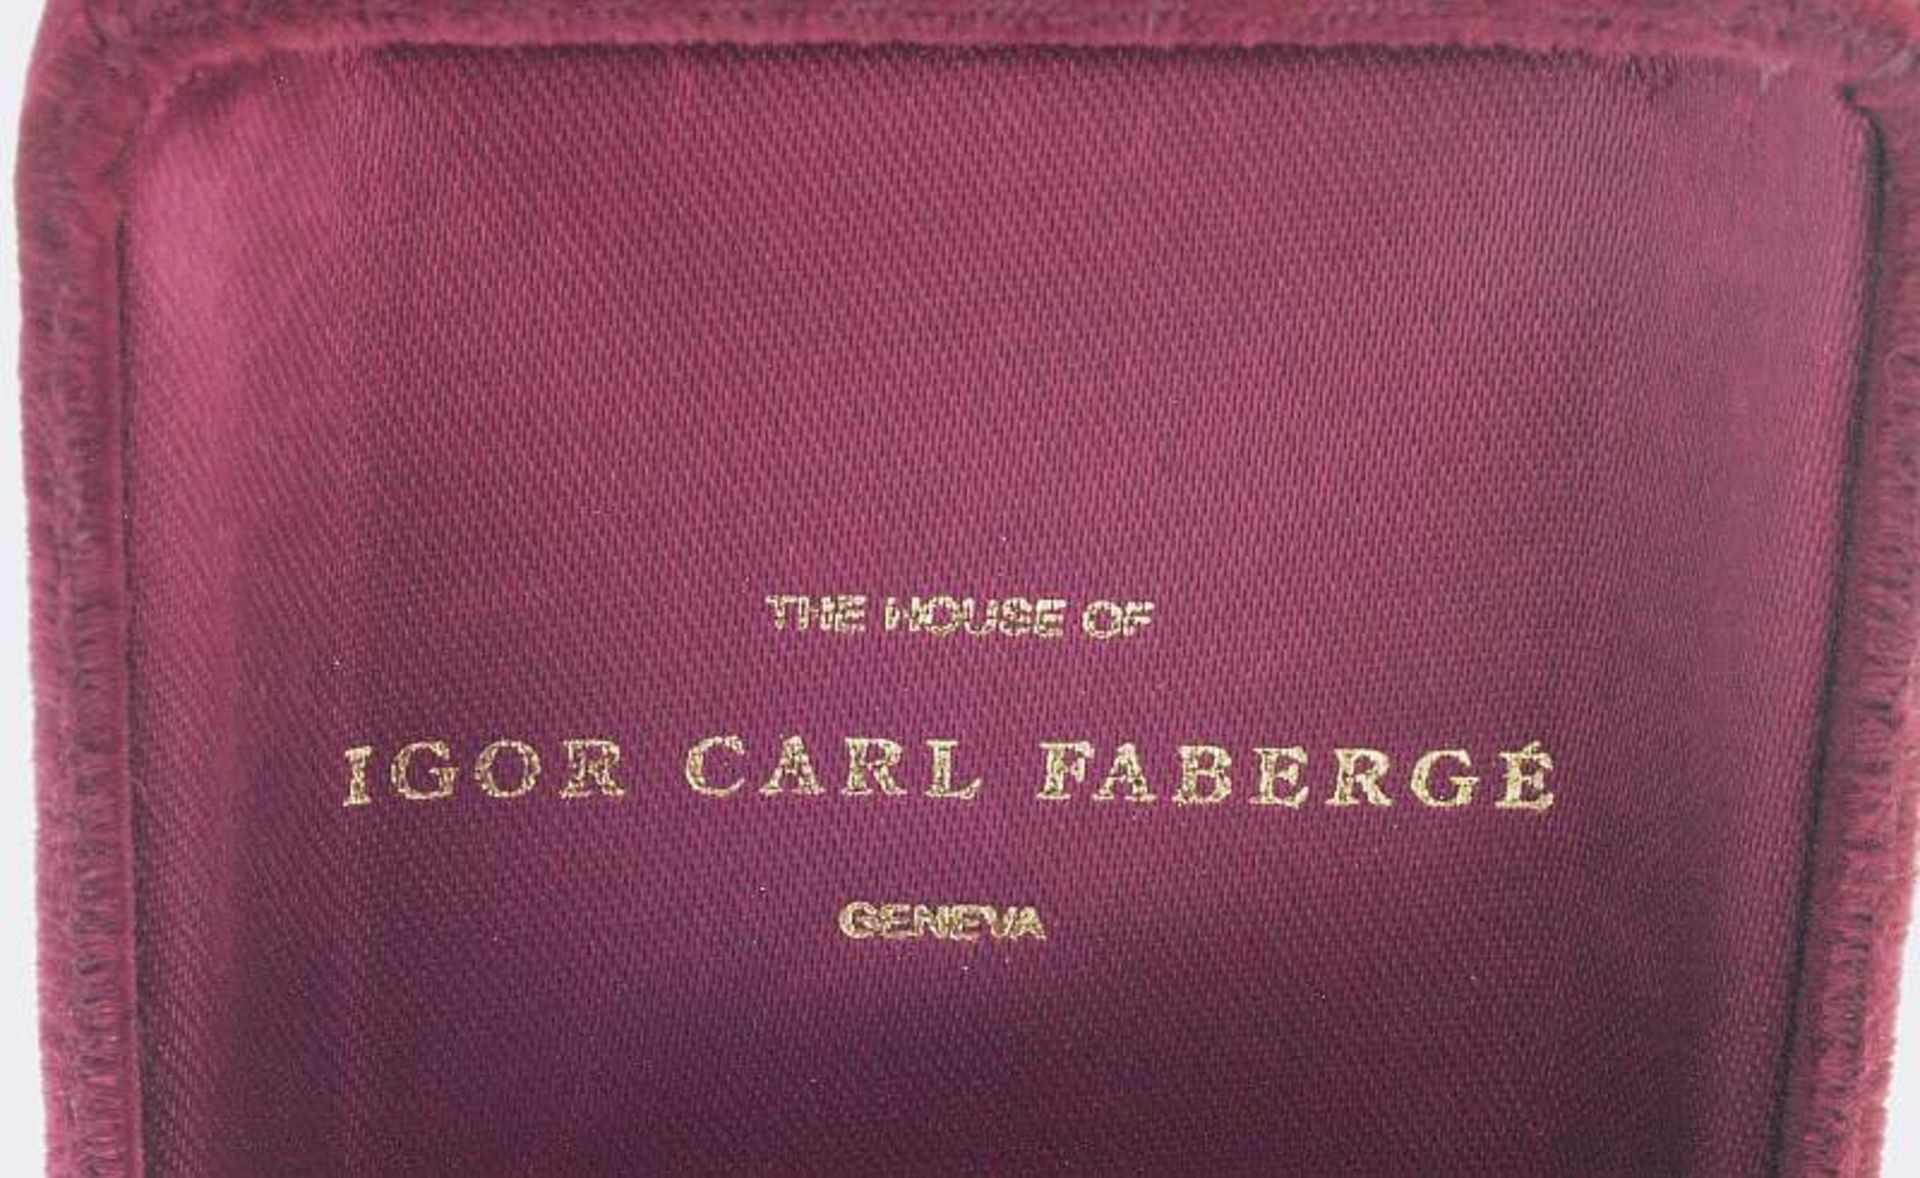 Das Mitternachts-Saphirkreuz, vom Hause Igor Carl Fabergé. Das Mitternachts-Saphirkreuz, vom Hause - Bild 5 aus 6